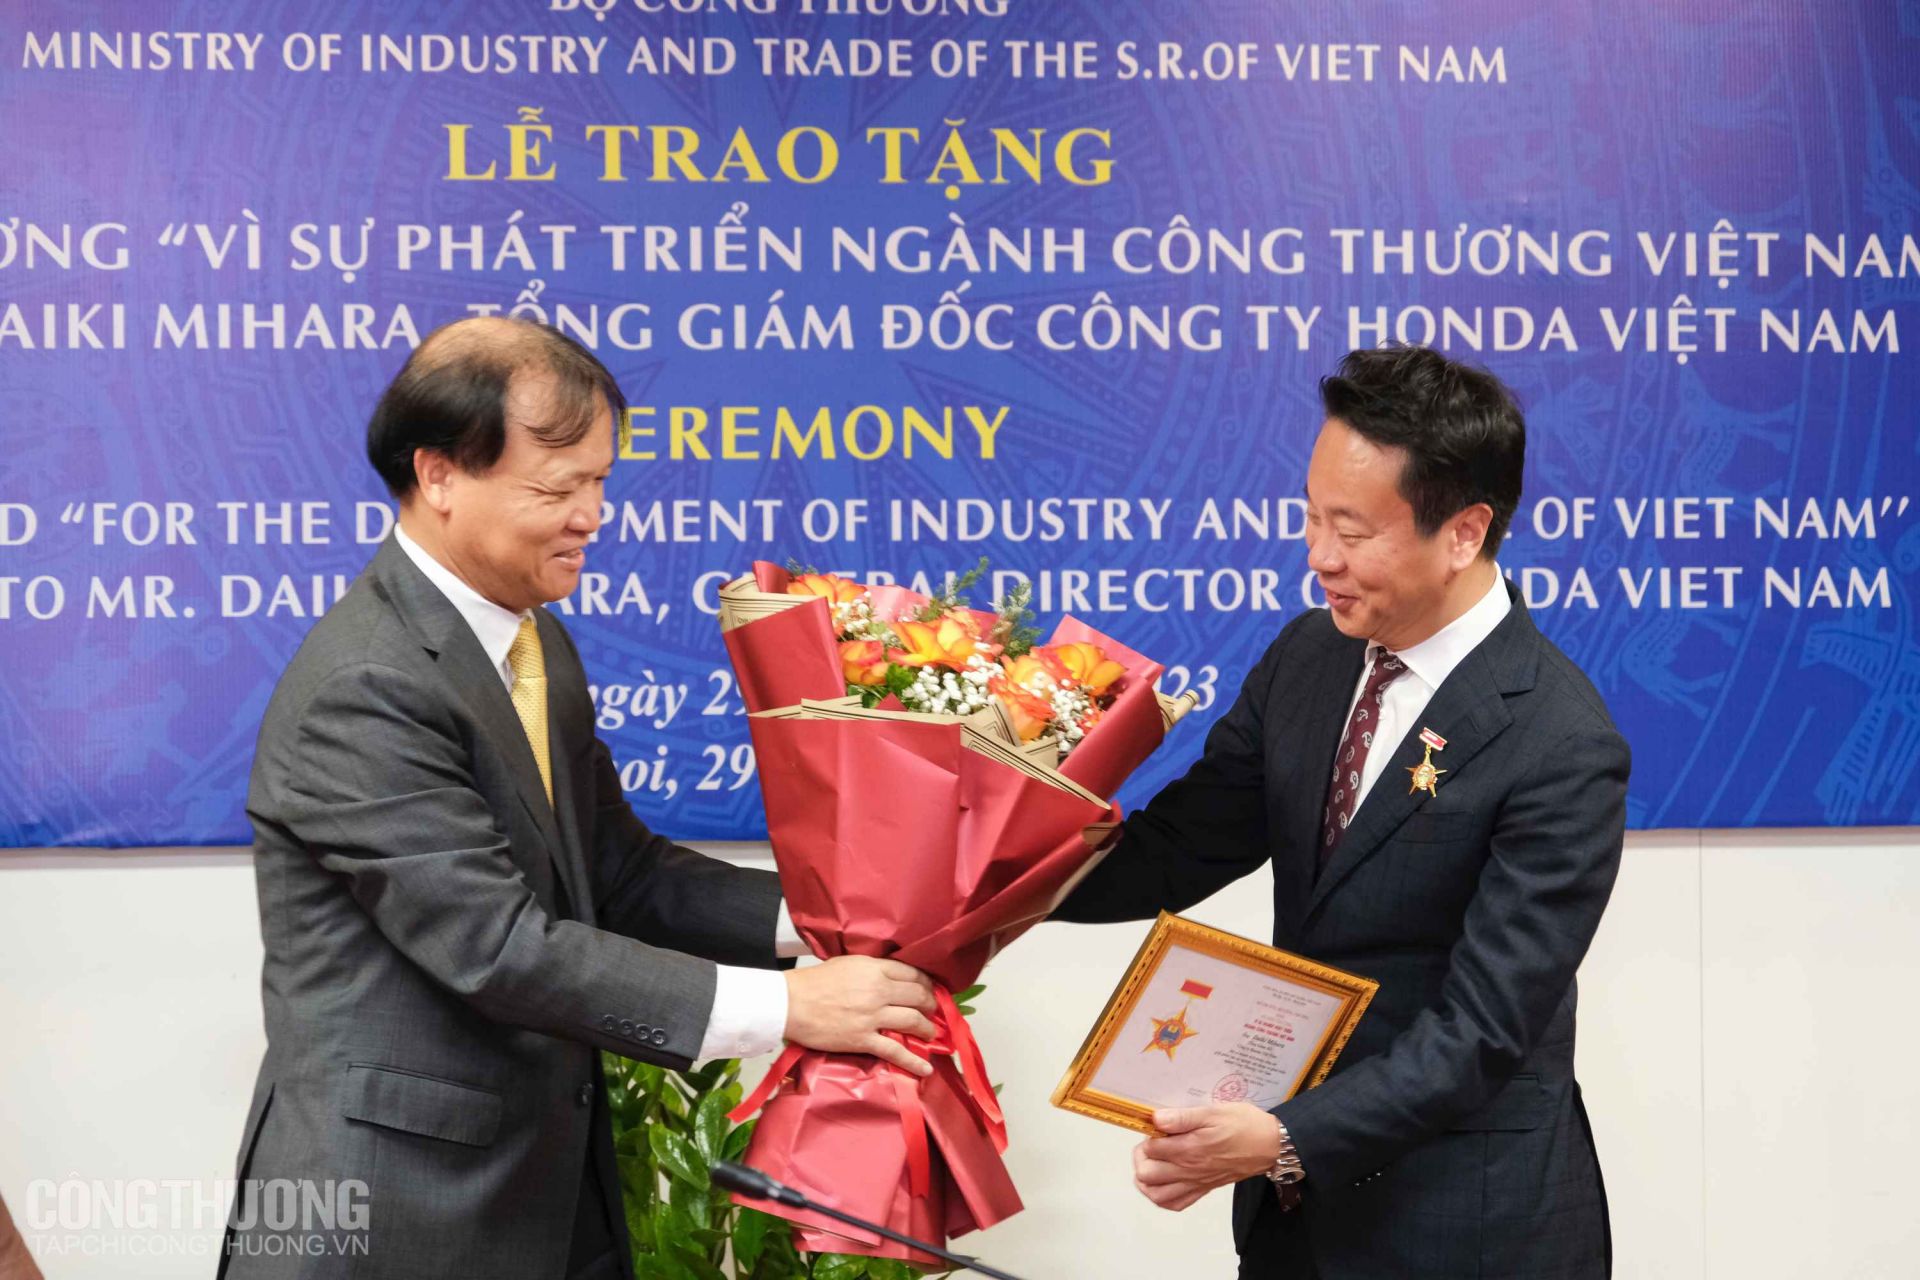 Thứ trưởng Đỗ Thắng Hải thay mặt lãnh đạo Bộ Công Thương trao Kỷ niệm chương “Vì sự nghiệp phát triển ngành Công Thương Việt Nam” cho ông Daiki Mihara - Tổng Giám đốc Công ty Honda Việt Nam